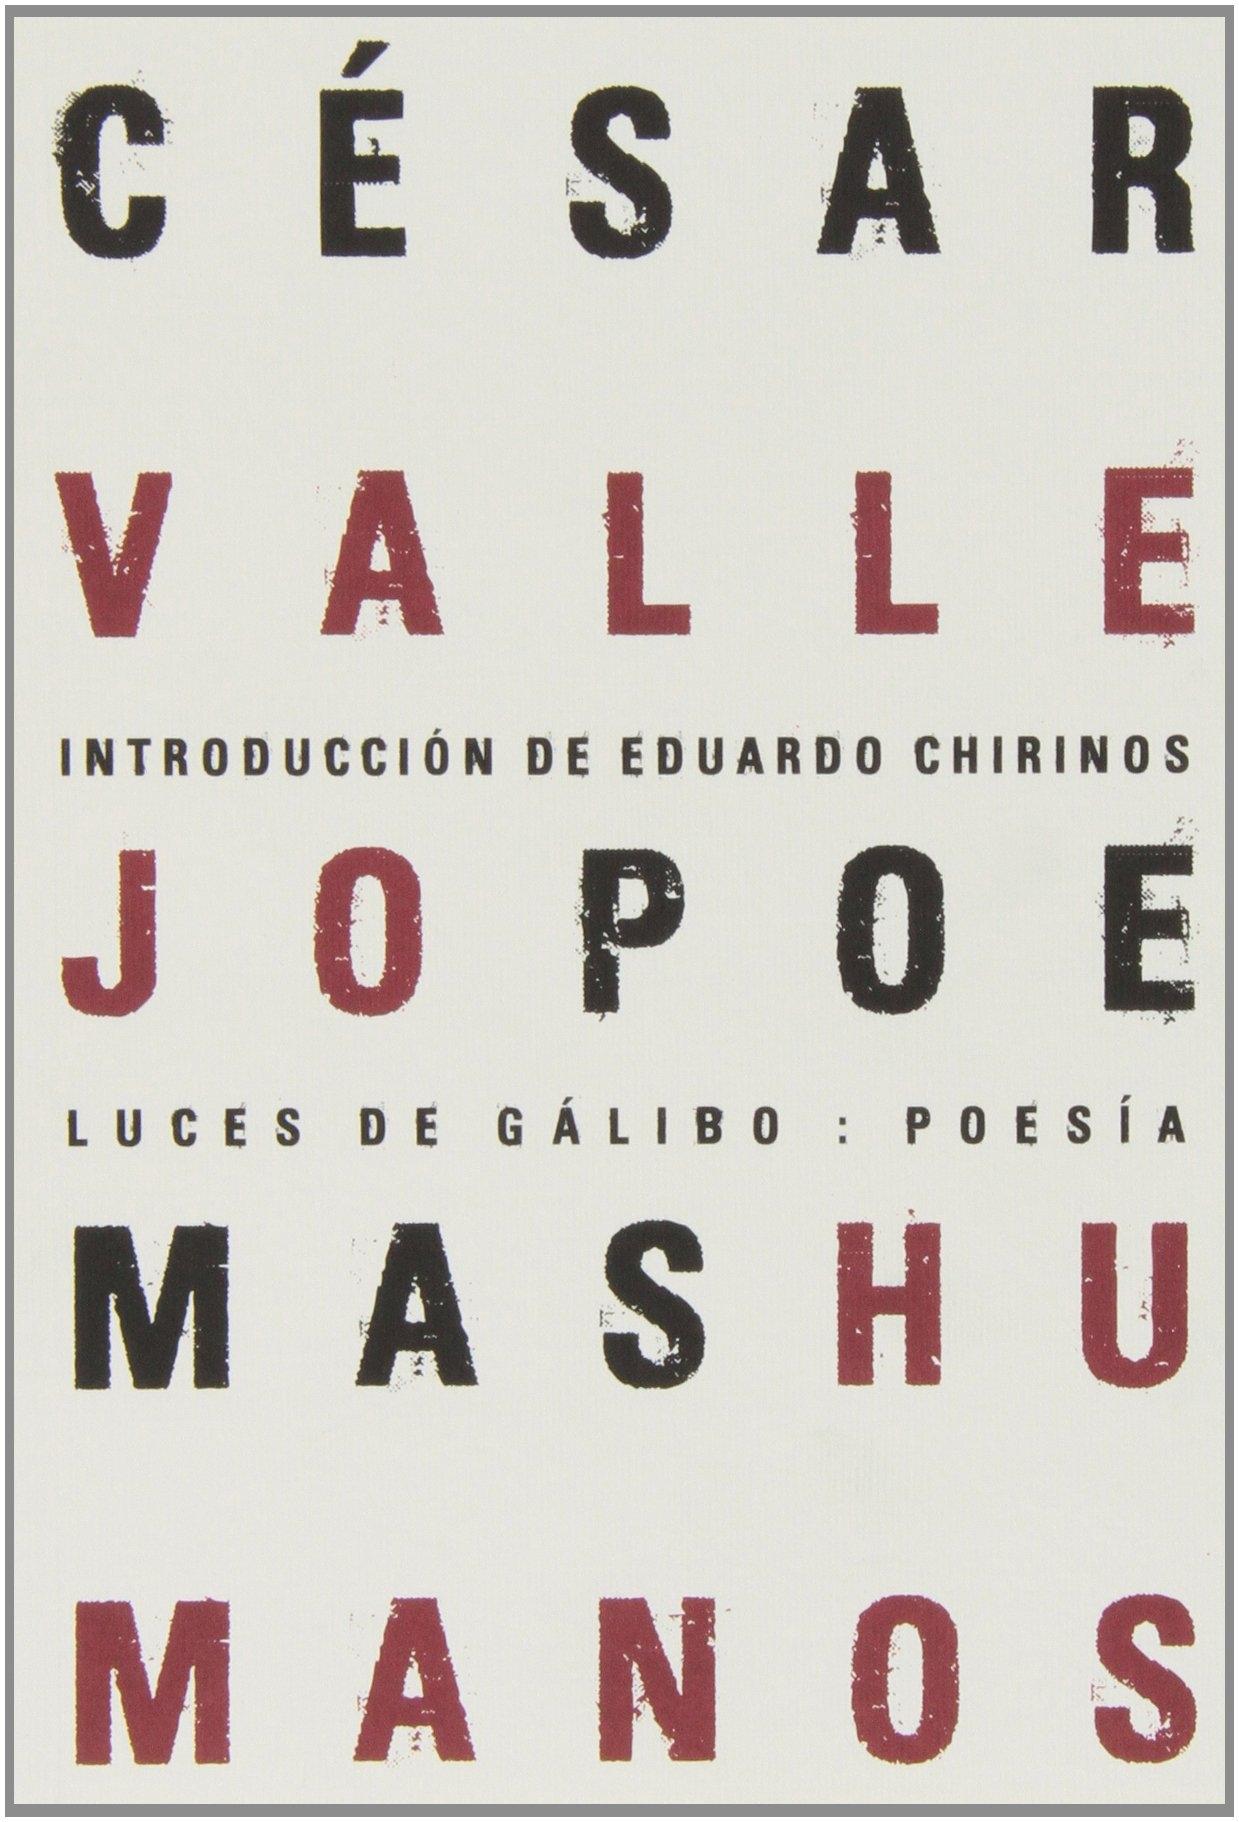 Poemas Humanos "Introducción de Eduardo Chirinos". 